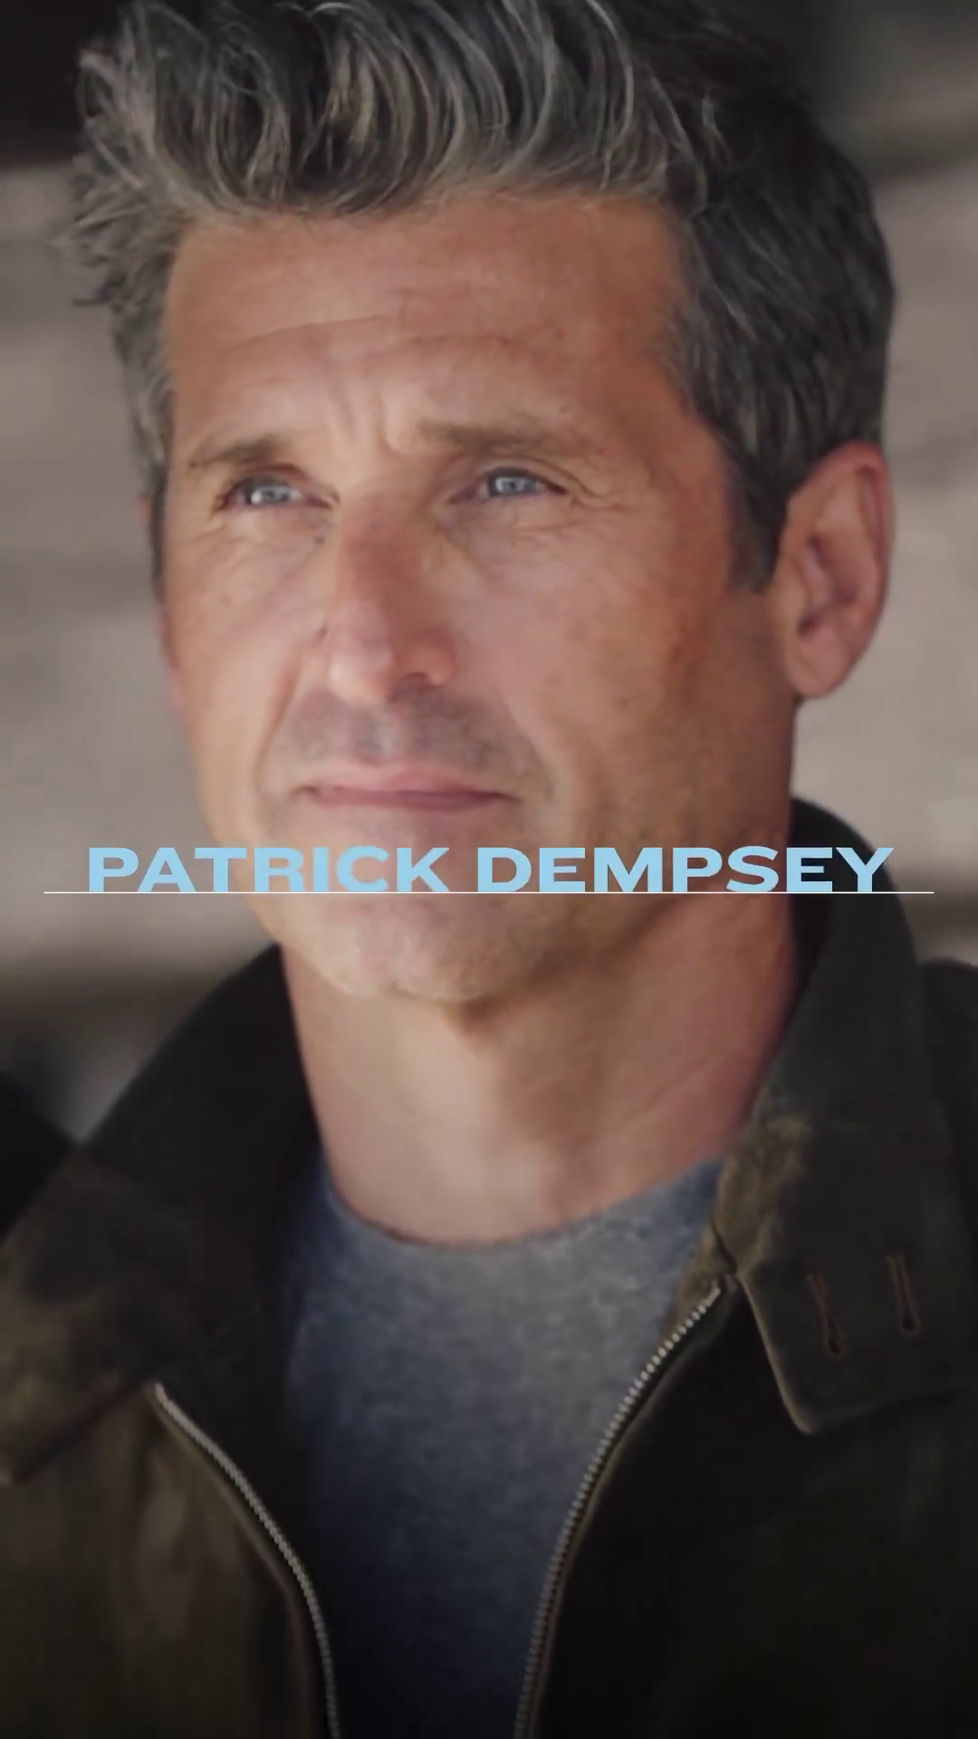 Herec Patrick Dempsey se stal nejvíce sexy mužem roku 2023